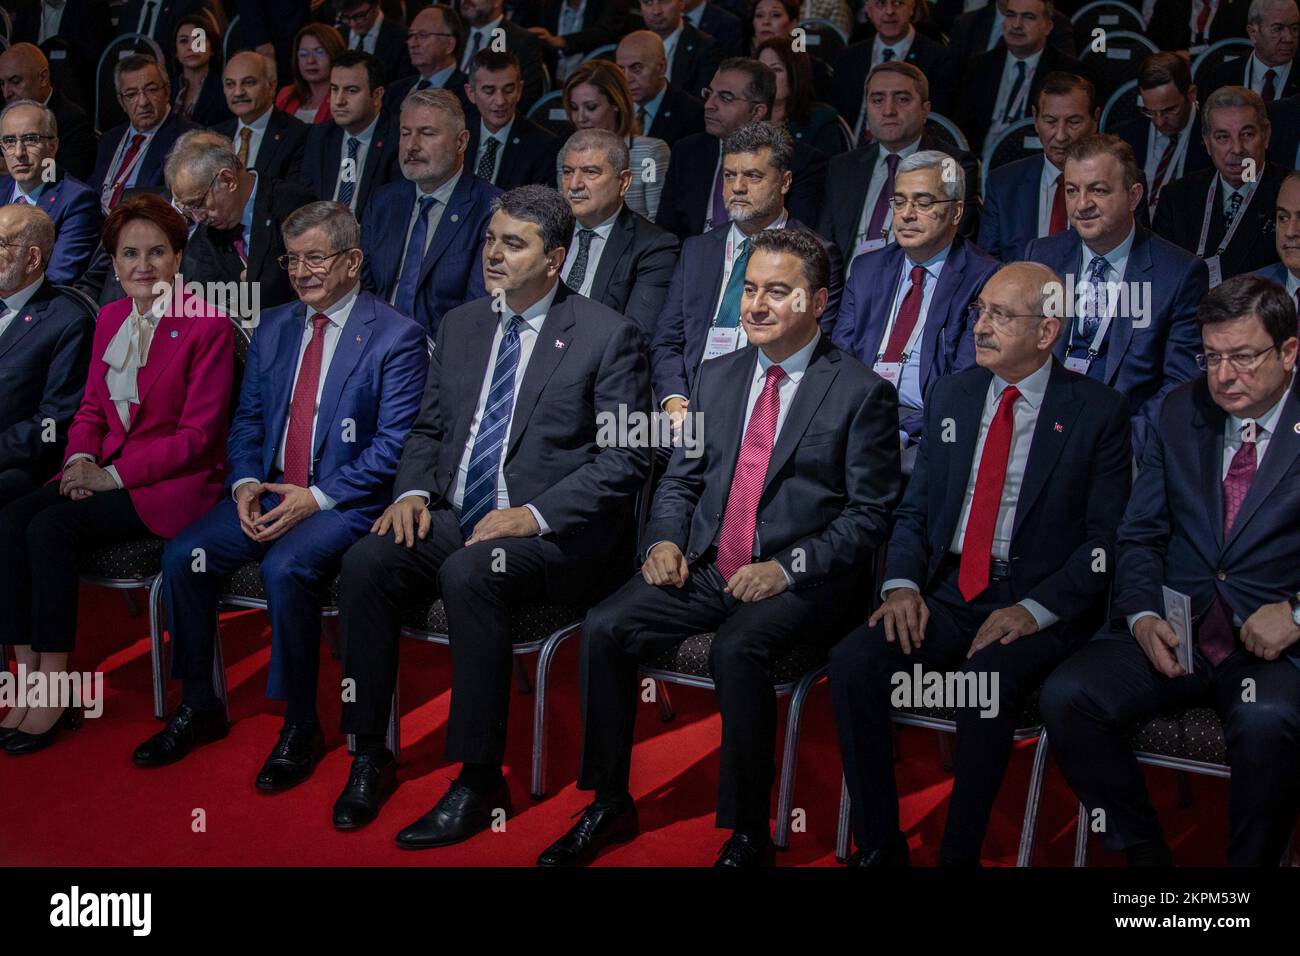 Führer der Republikanischen Volkspartei (CHP) Kemal Kilicdaroglu (2. R), IYI Partei Meral Aksener (4. L), Felicity Party (Saadet) Temel Karamollaoglu (3. L), Demokratische Partei (DP) Gultekin Uysal (4. R), Future Party (Gelecek) Ahmet Davutoglu (5. L), Und Demokratie und Fortschritt (DEVA), Ali Babacan (3. R), nehmen an der Einführungstagung zum Vorschlag zur Verfassungsänderung des gestärkten Parlamentssystems Teil. Vorsitzender der Republikanischen Volkspartei (KHP) Kemal K?l?codaro?lu, VORSITZENDER DER IYI-Partei Meral AK?ener, Vorsitzender der Felicity-Partei (SP) Temel Karamollao?lu, Vorsitzender der Demokratischen Partei (DP) Stockfoto